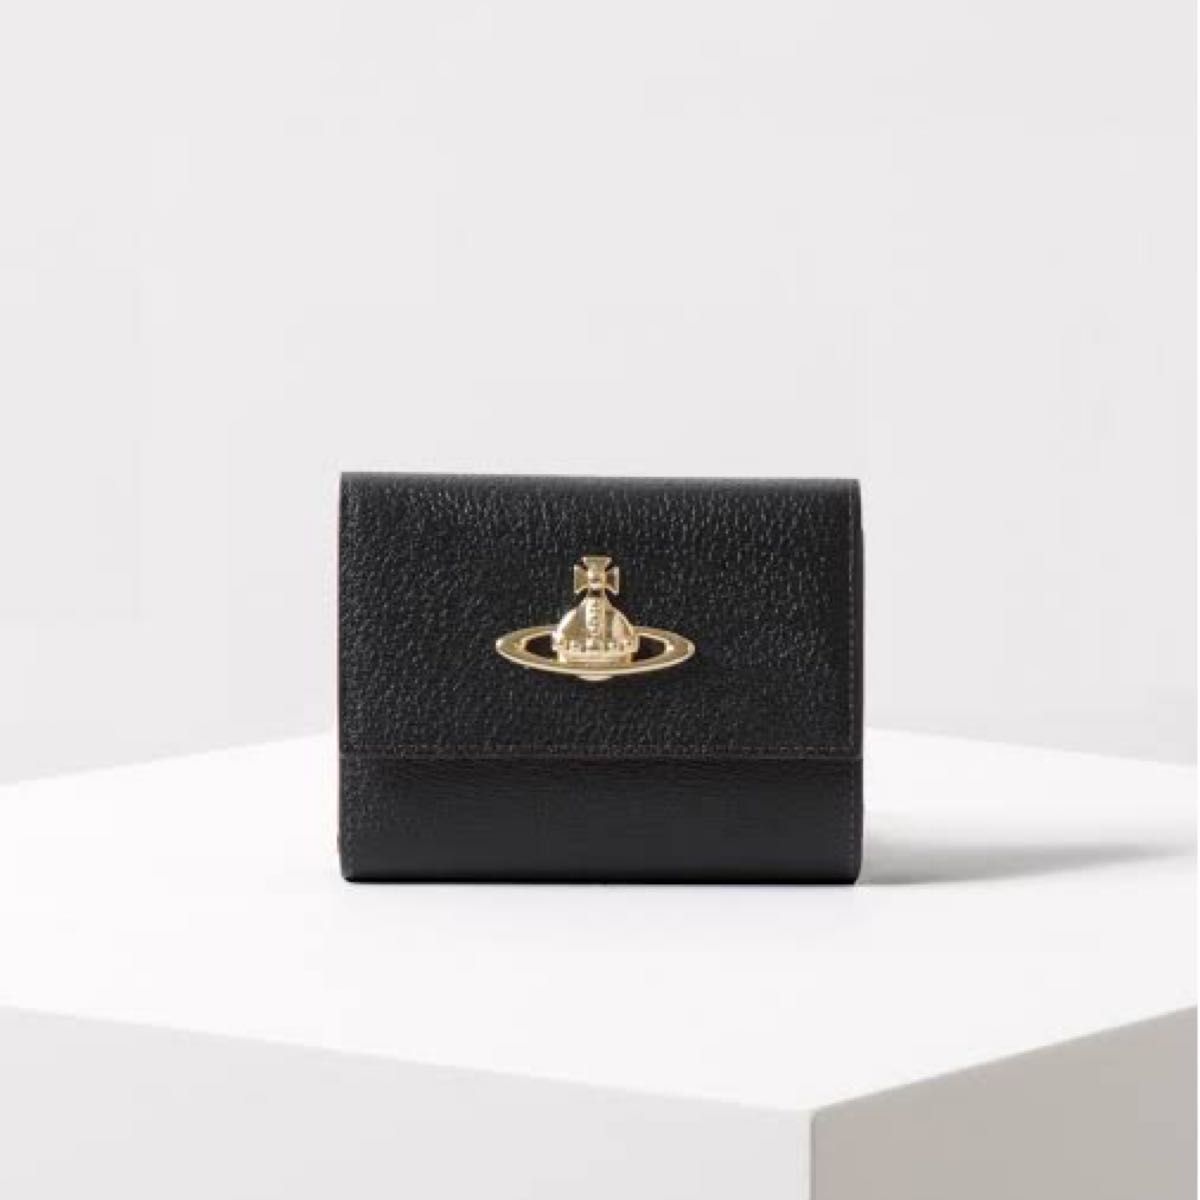 Vivienne Westwood 財布 